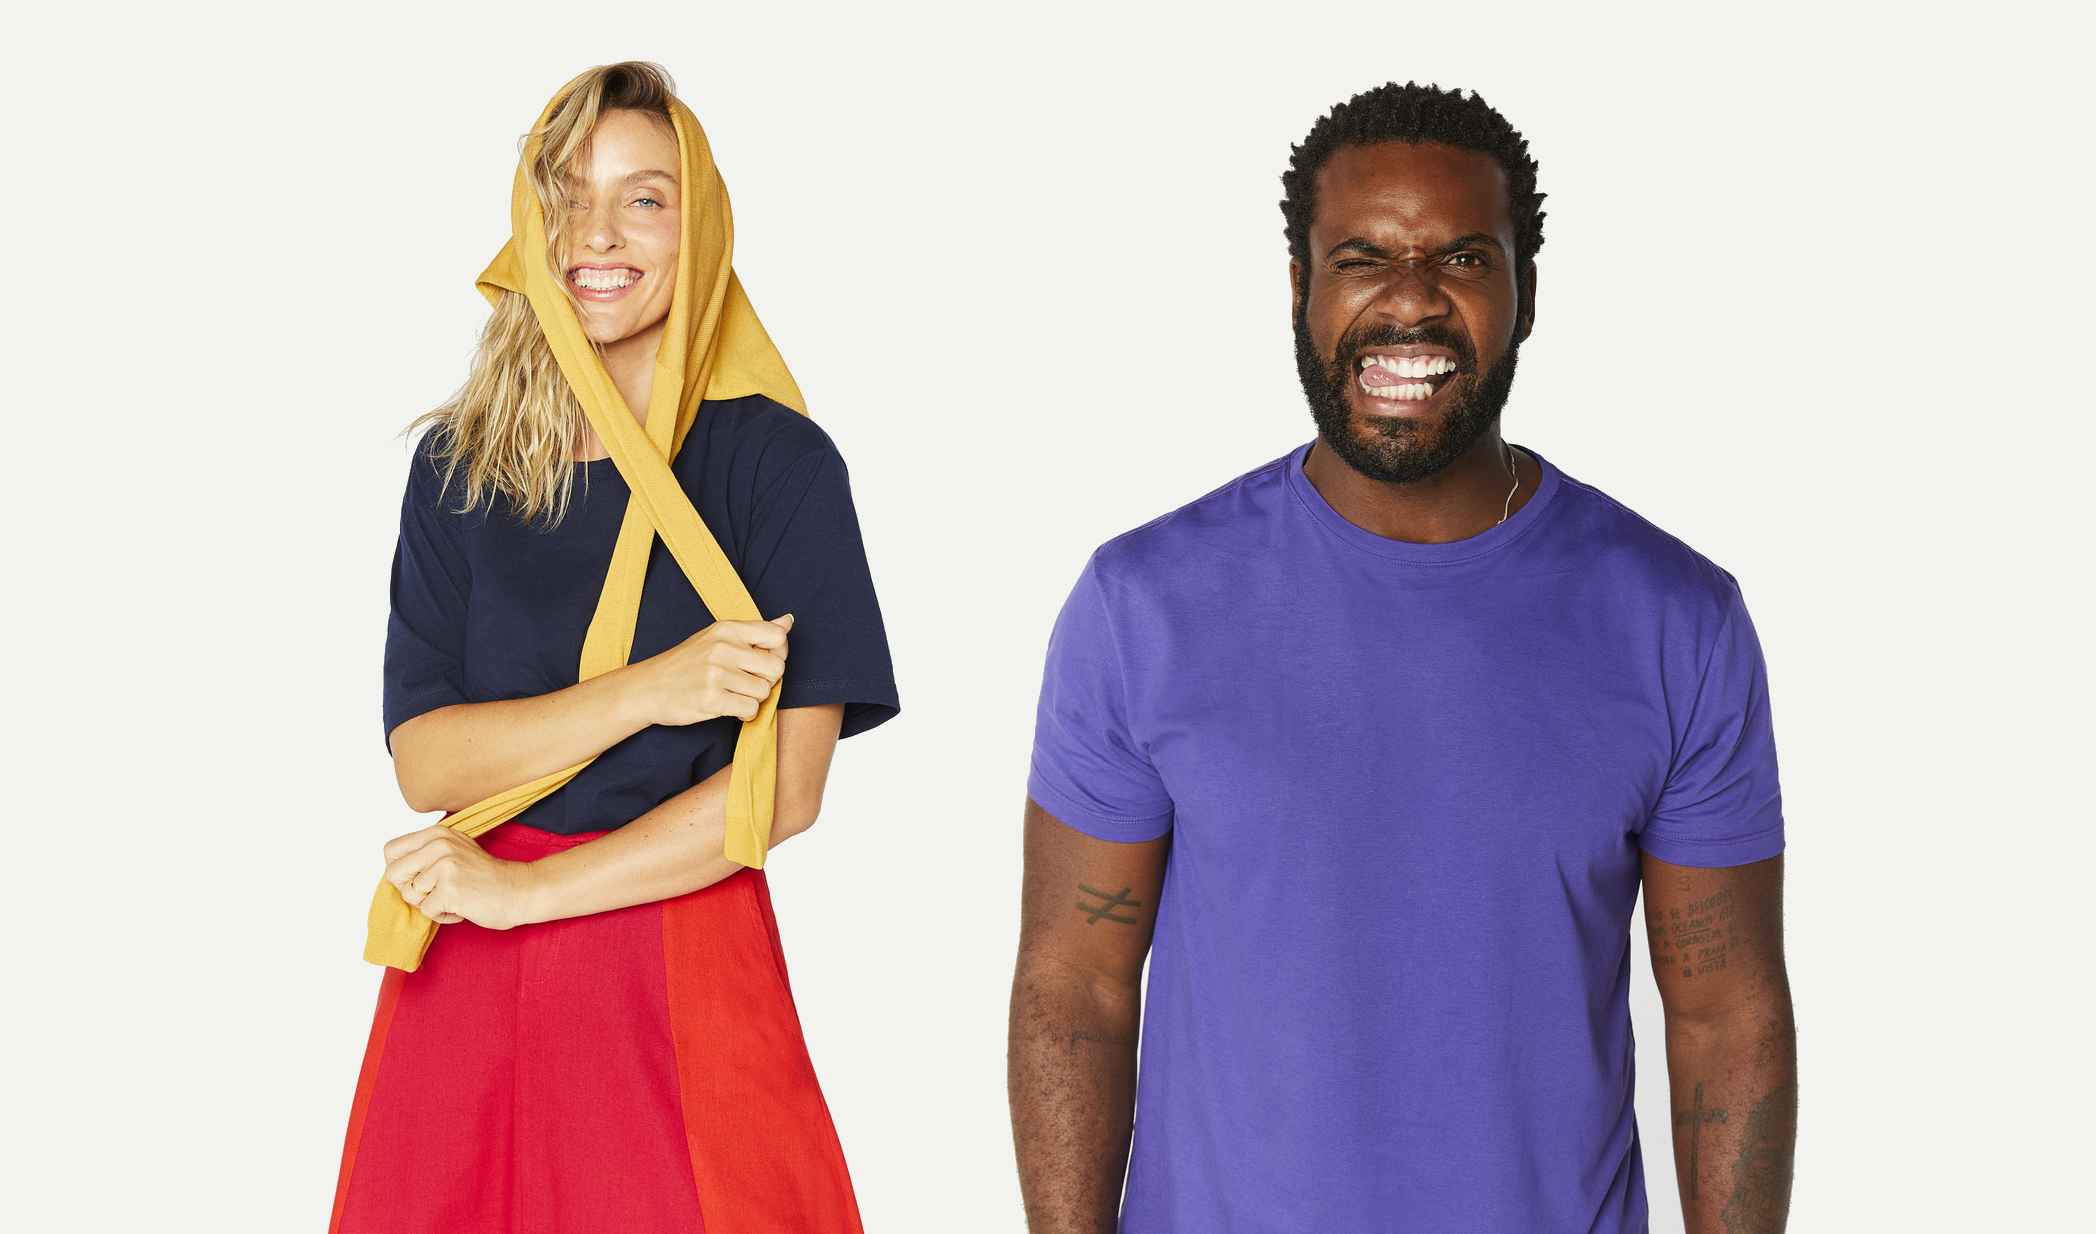 Reserva lança a ‘Camiseta Simples’ que promete revolucionar a moda atual